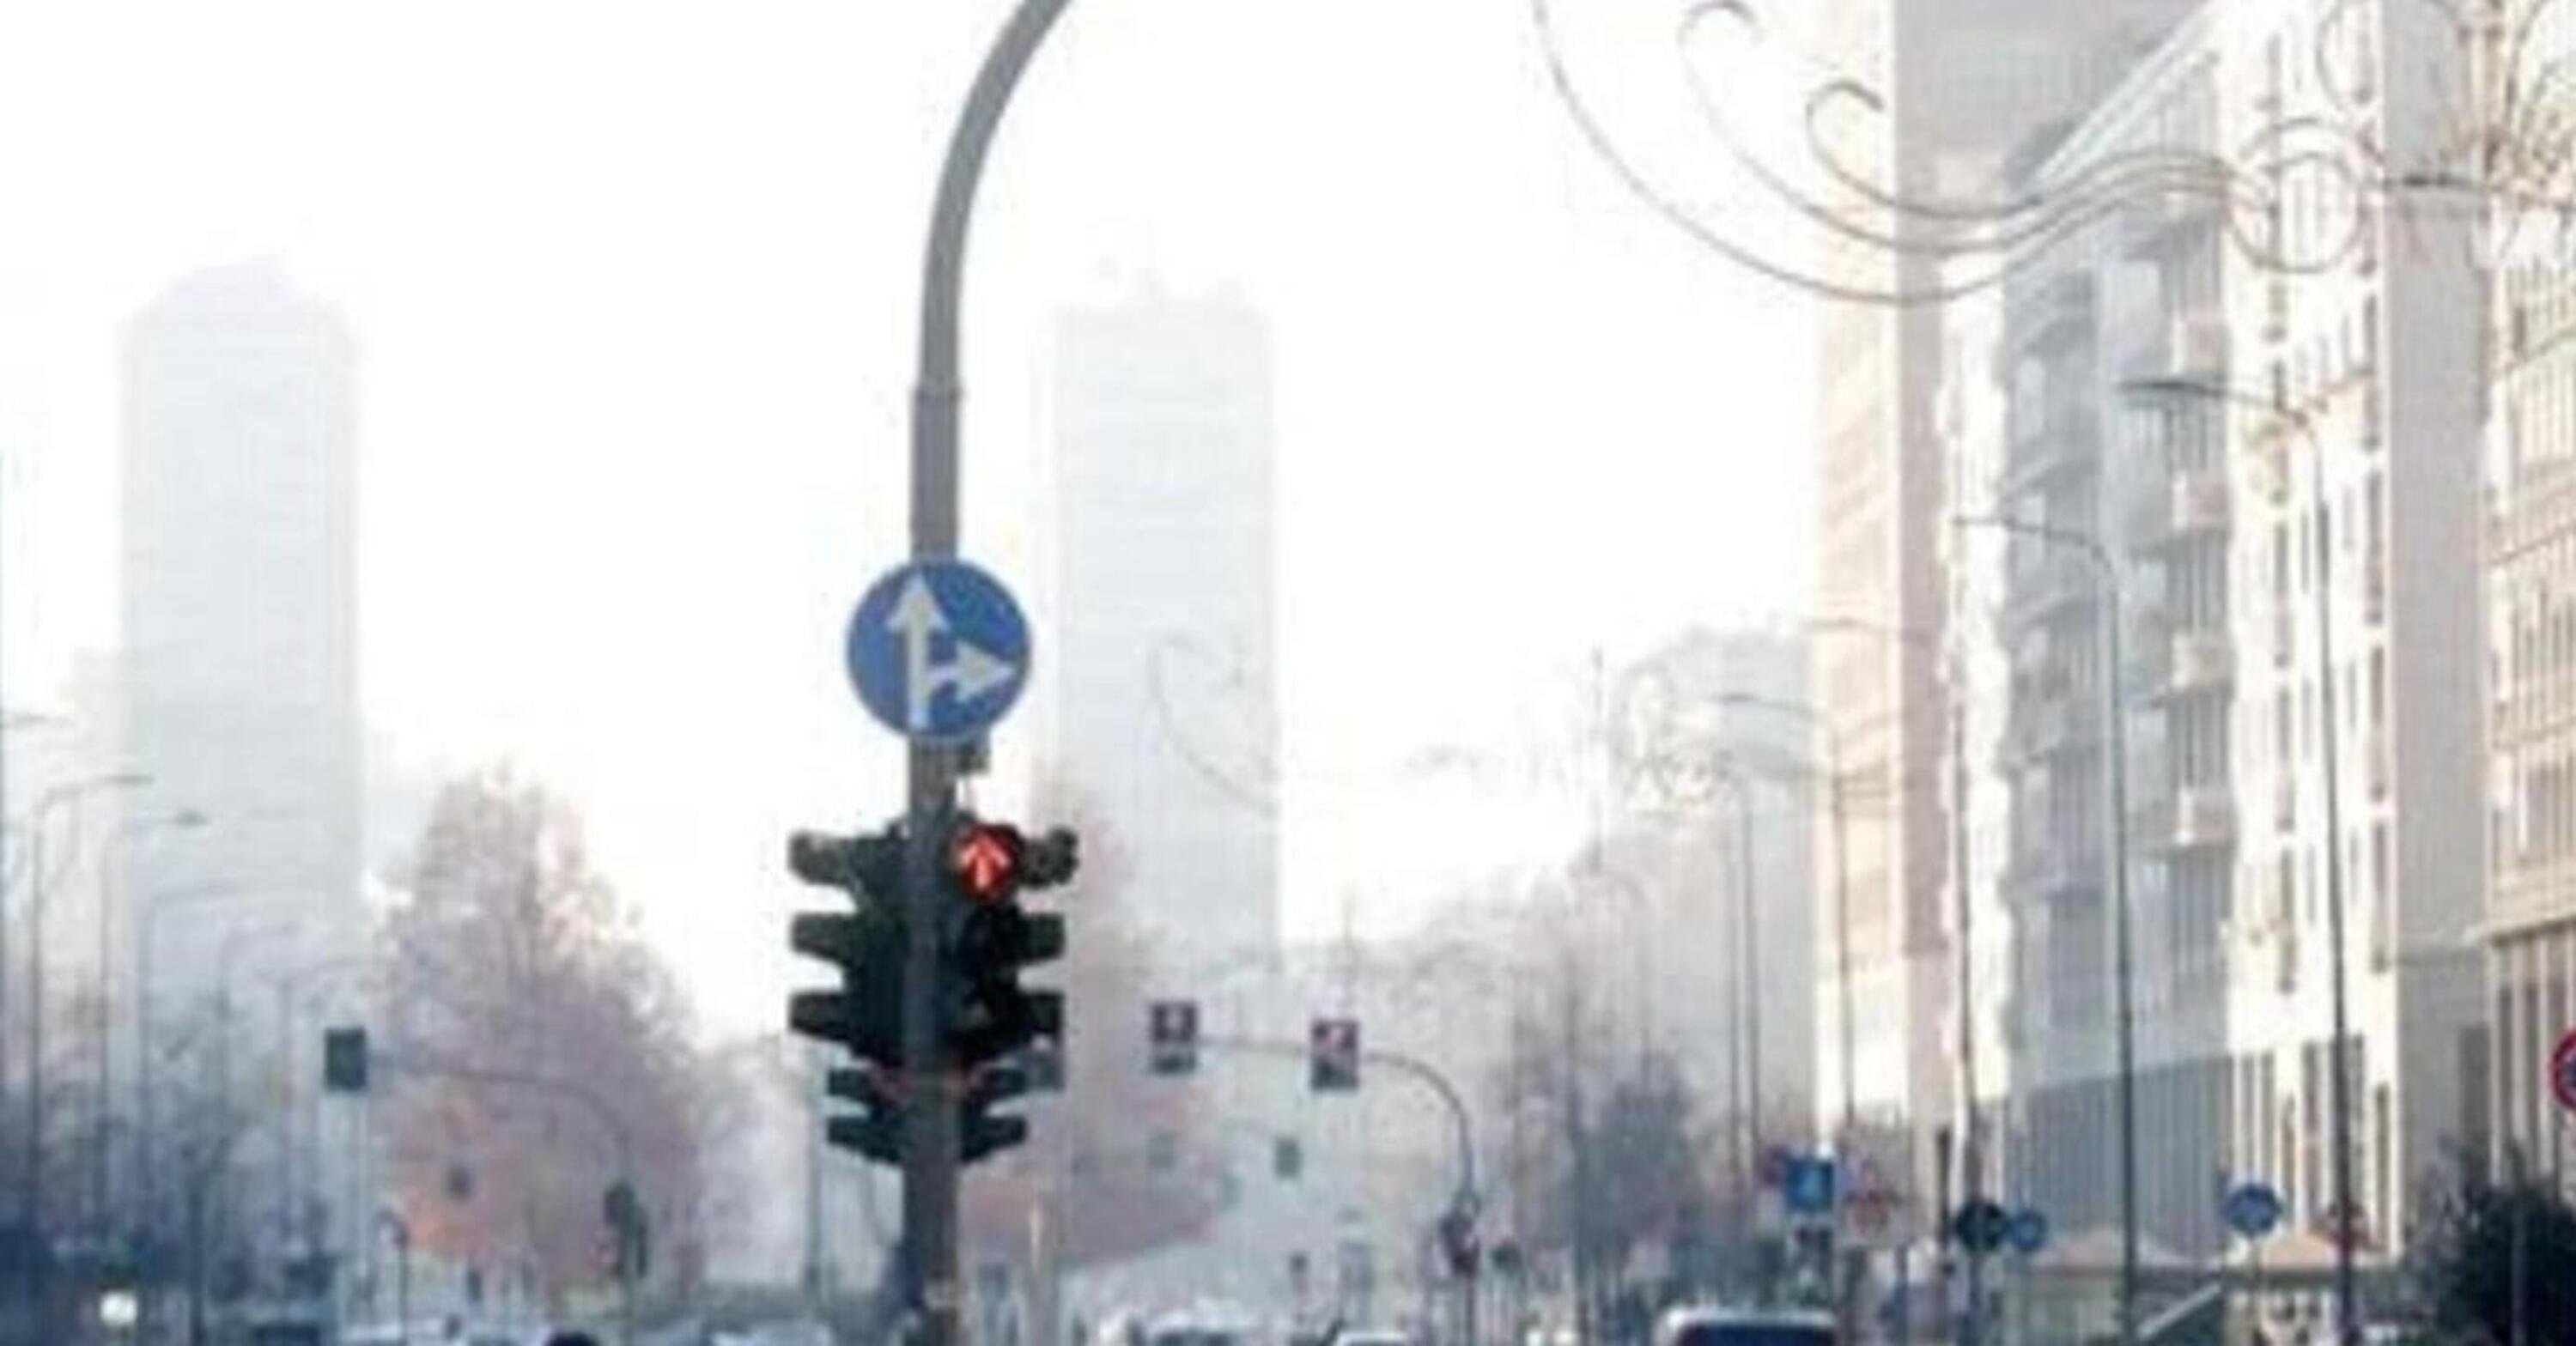 Da oggi misure anti smog a Milano e provincia